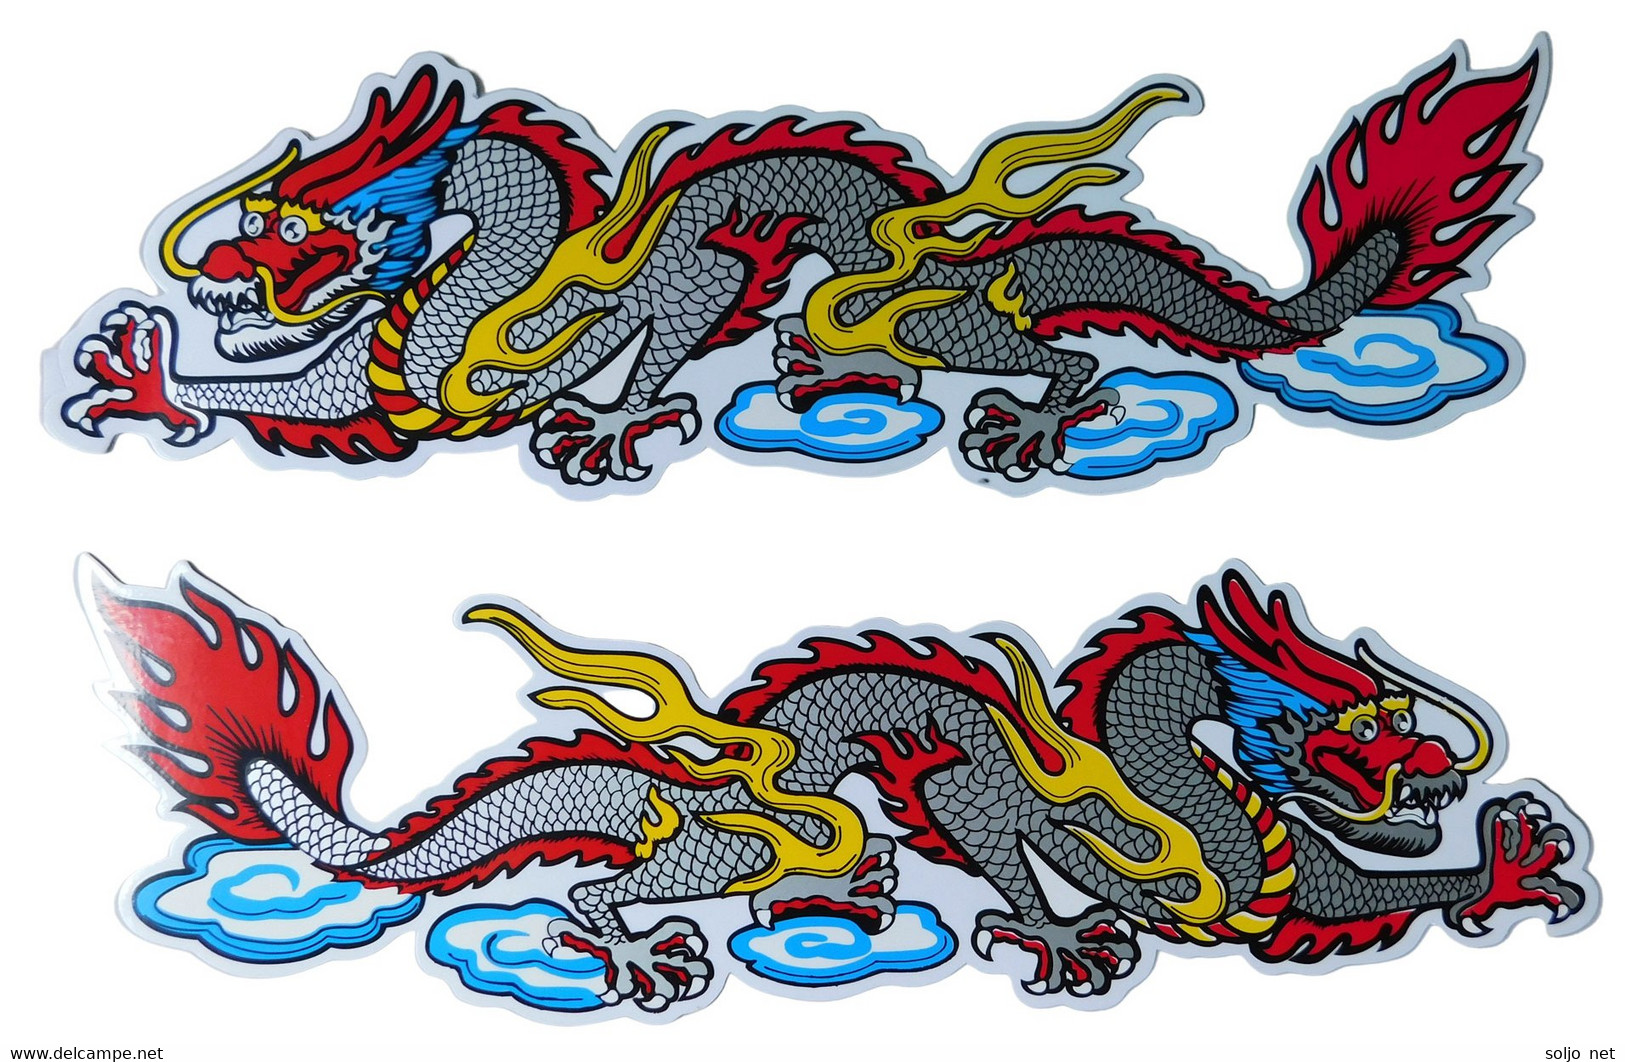 Drachen Schlange Tiere Aufkleber / Dragon Snake Animal Sticke2r X Bogen 35 X 11 Cm ST067 - Scrapbooking